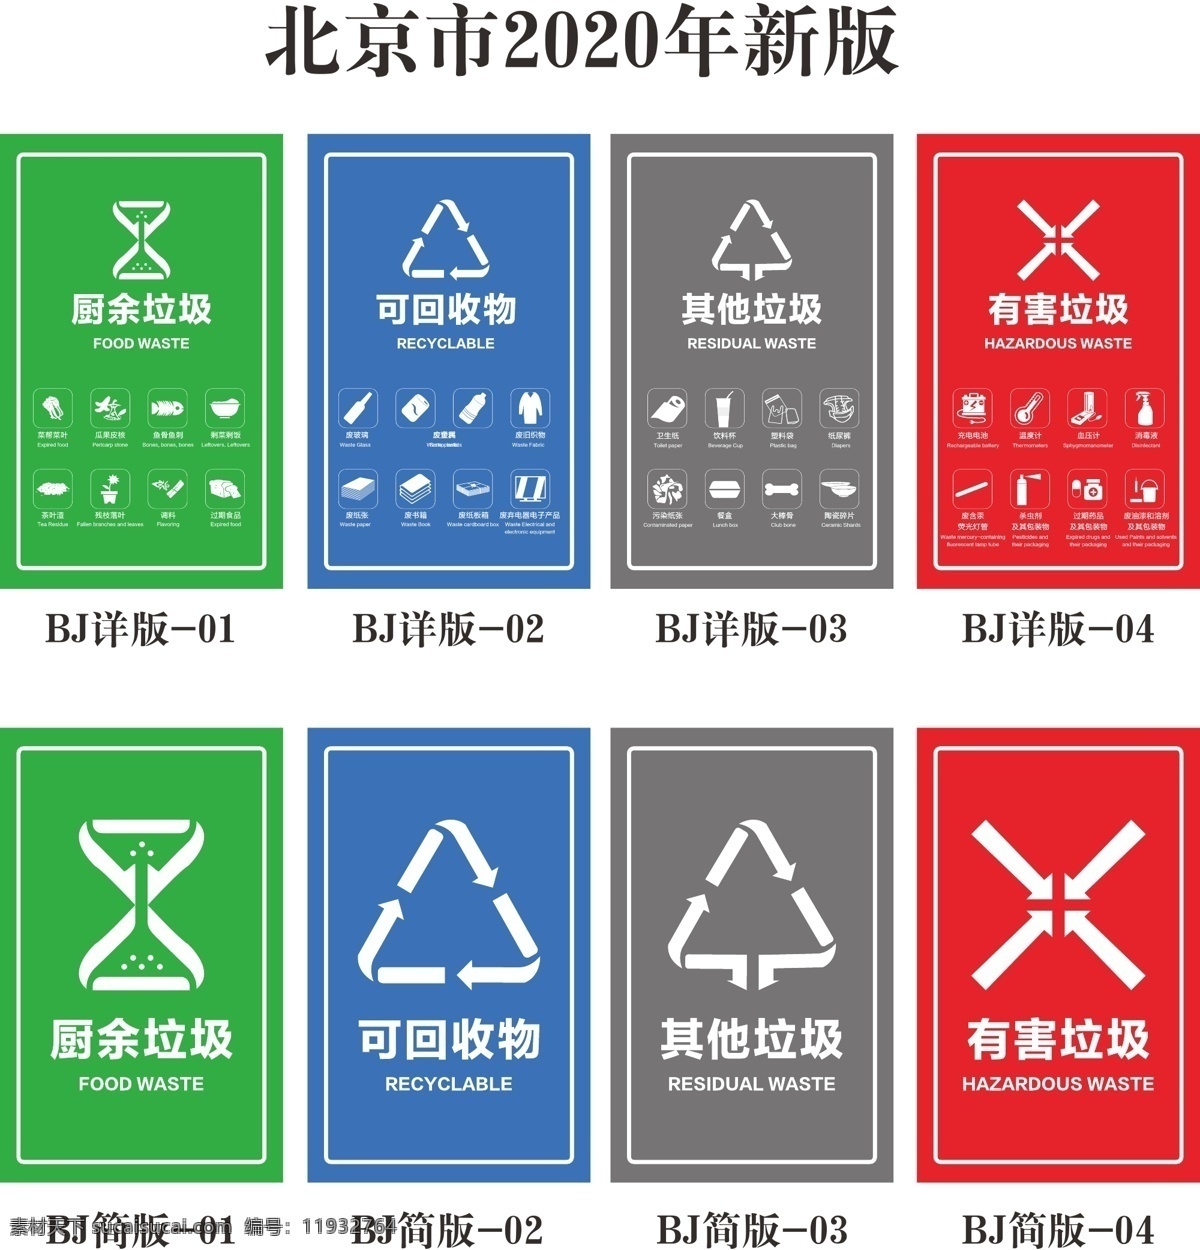 垃圾分类 垃圾分类桶贴 桶贴北京版 北京版 垃圾分类标贴